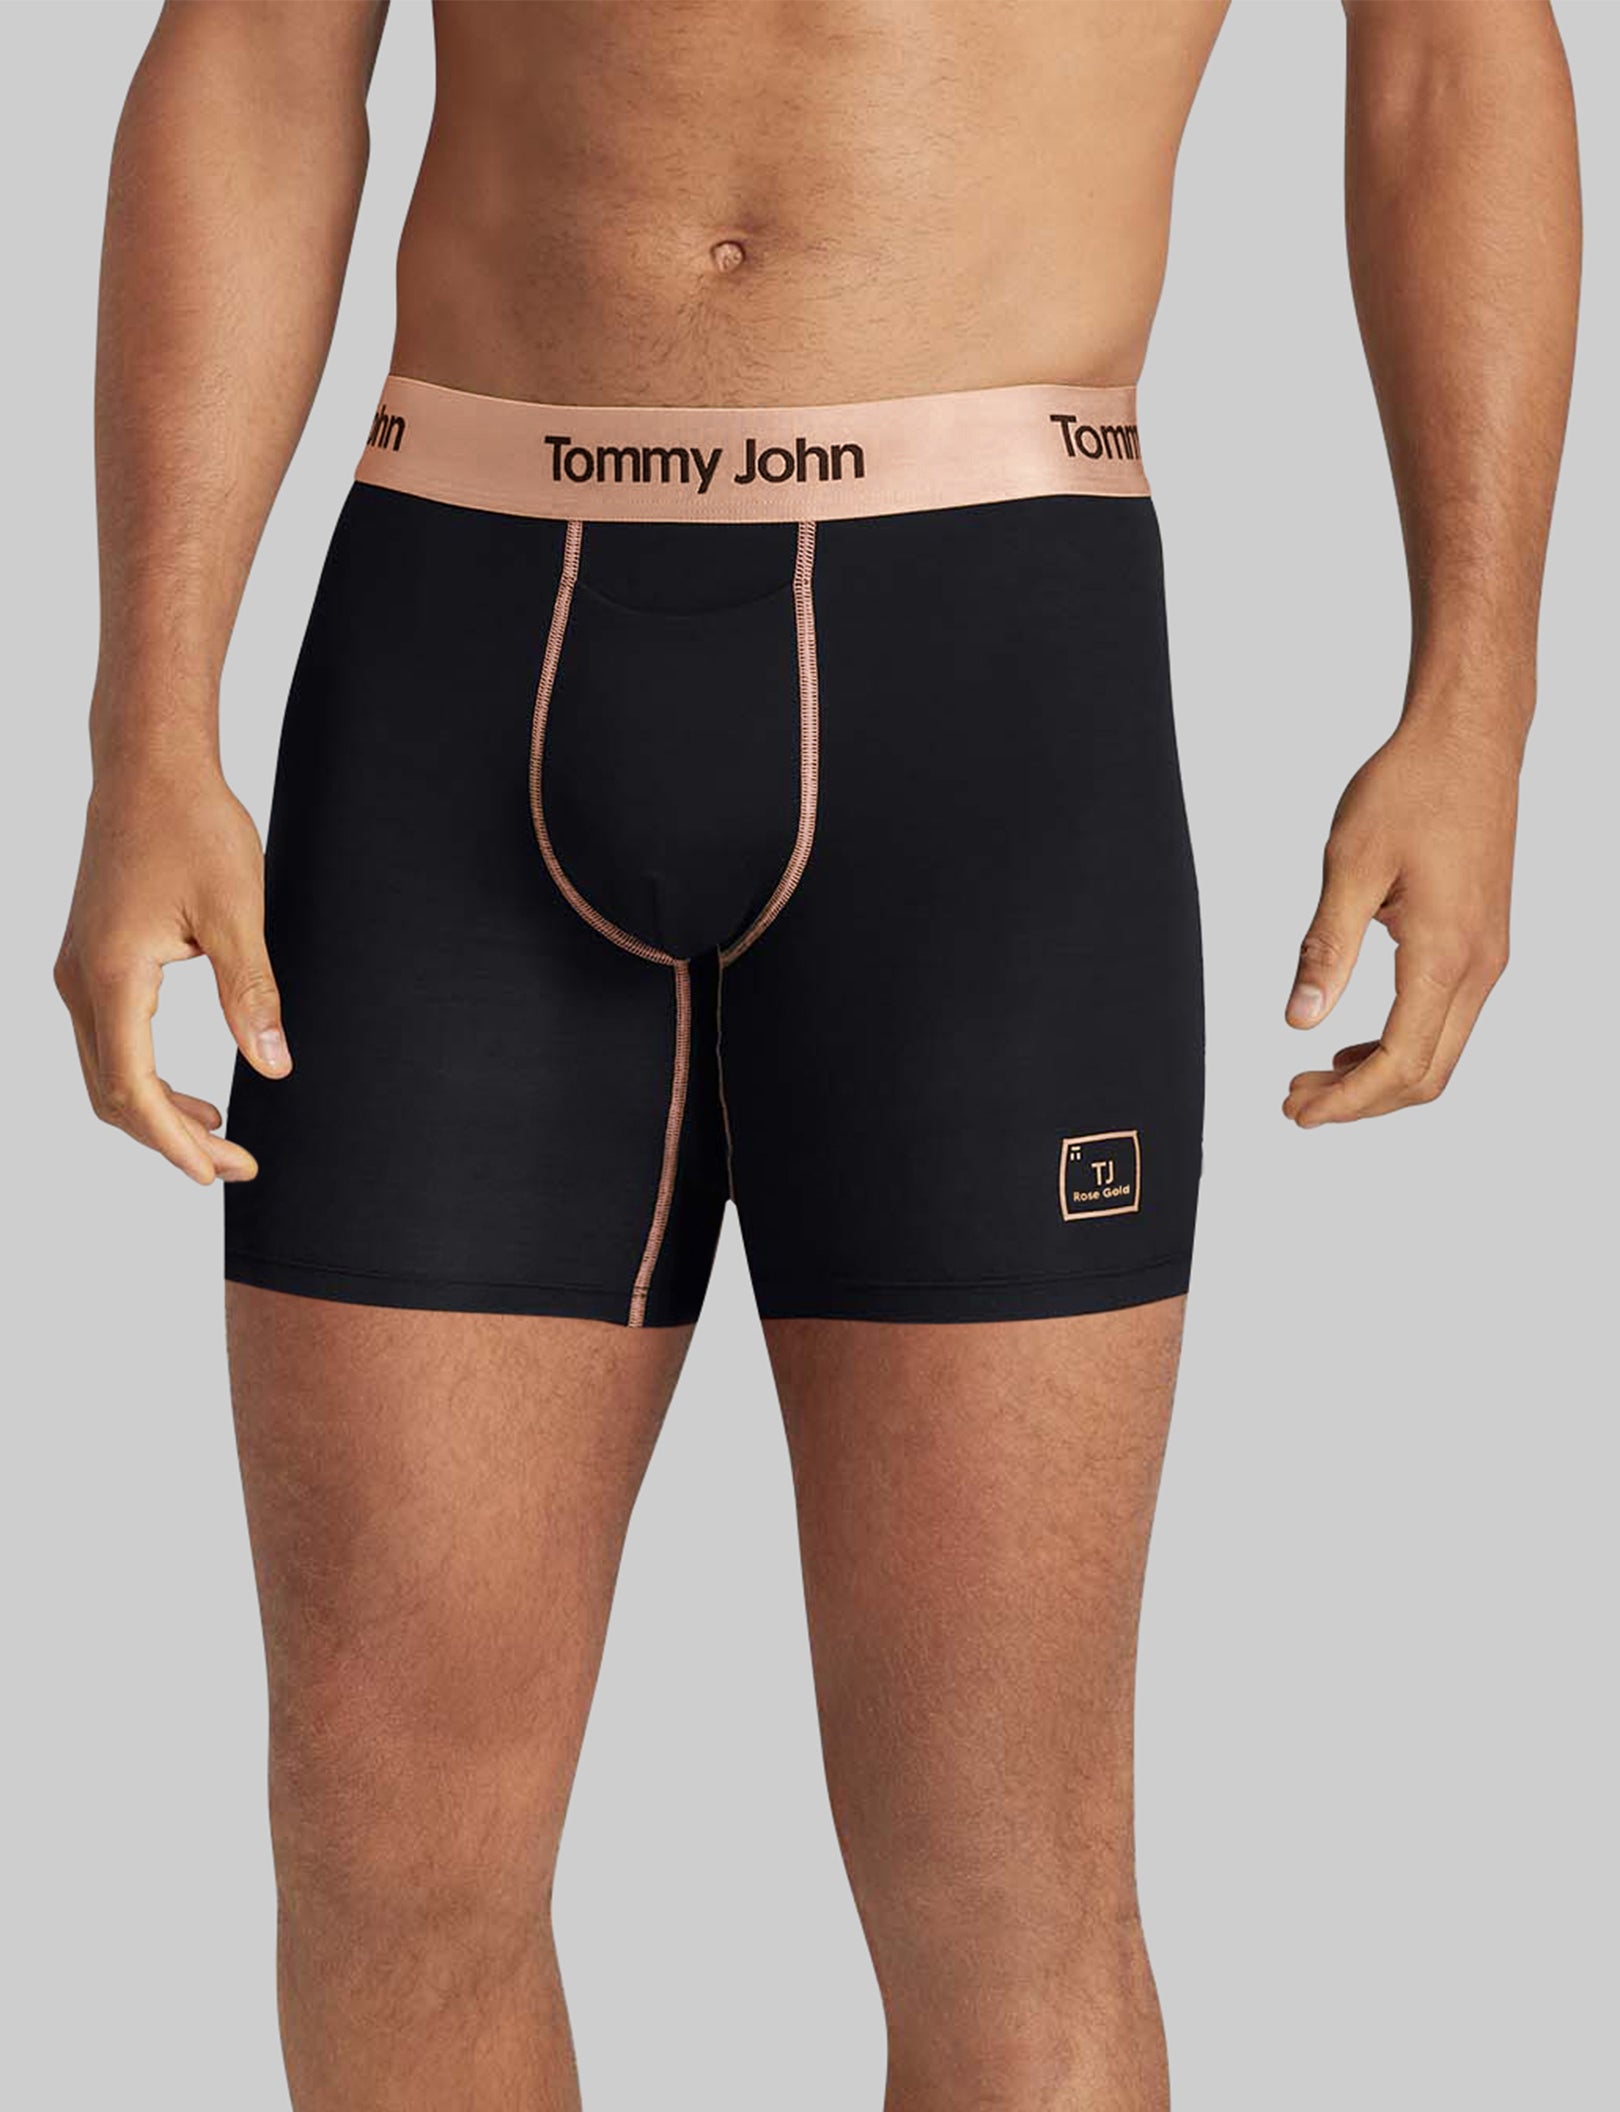 Tommy John Underwear  Mens Second Skin Hammock Pouch